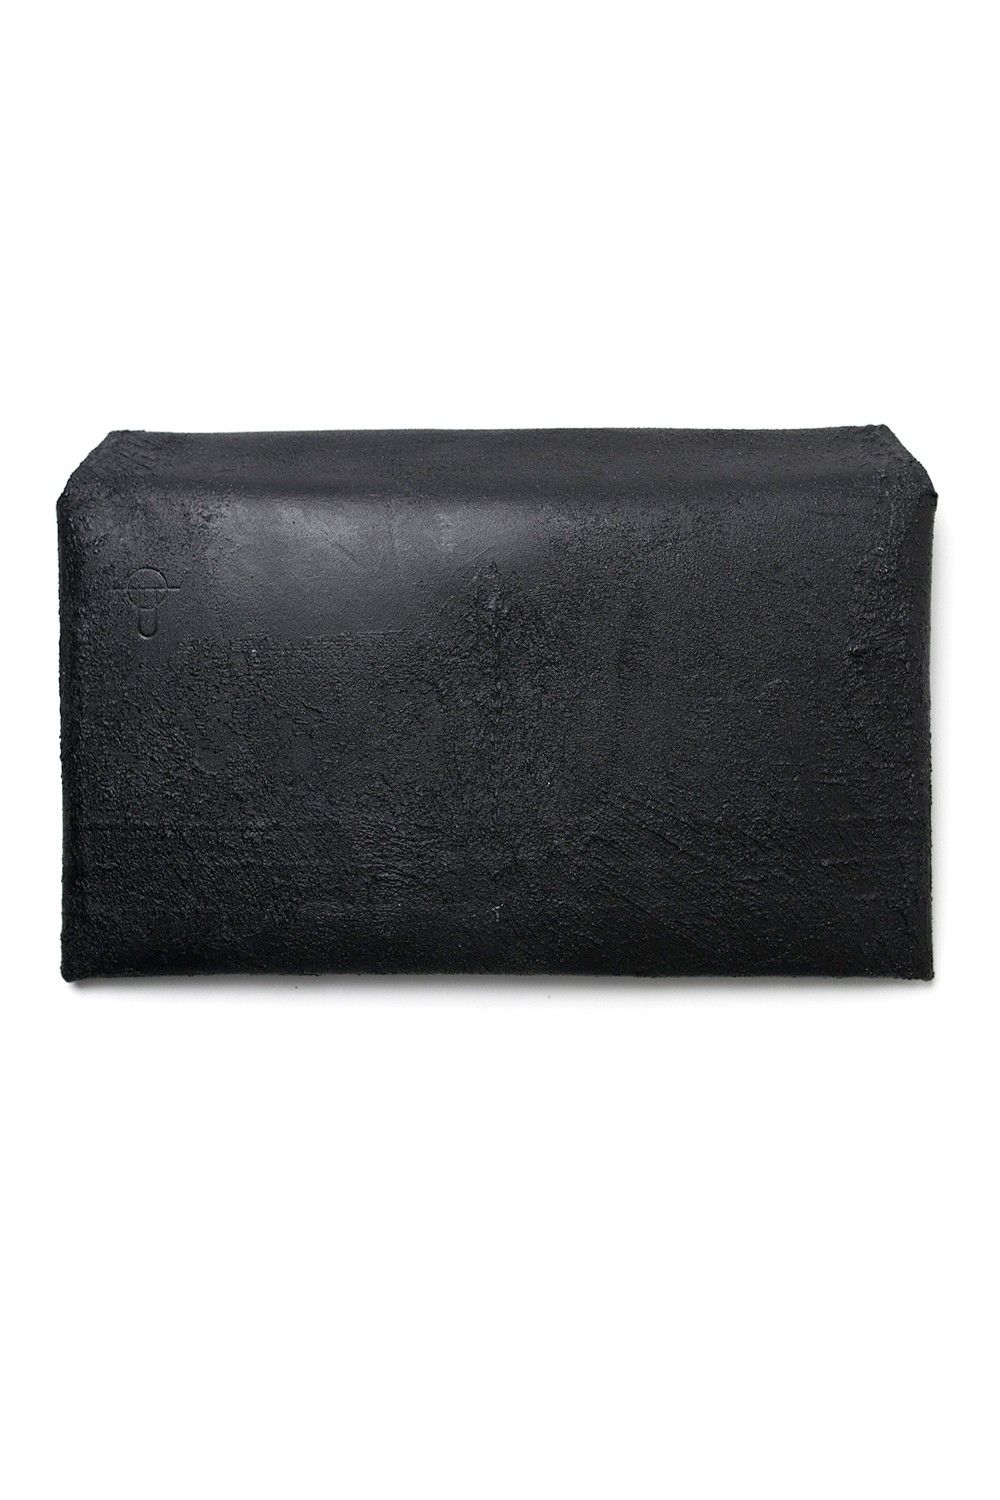 KAGARI YUSUKE - 【ラスト1点】封筒型長財布 [黒い壁] / mw02-bk 